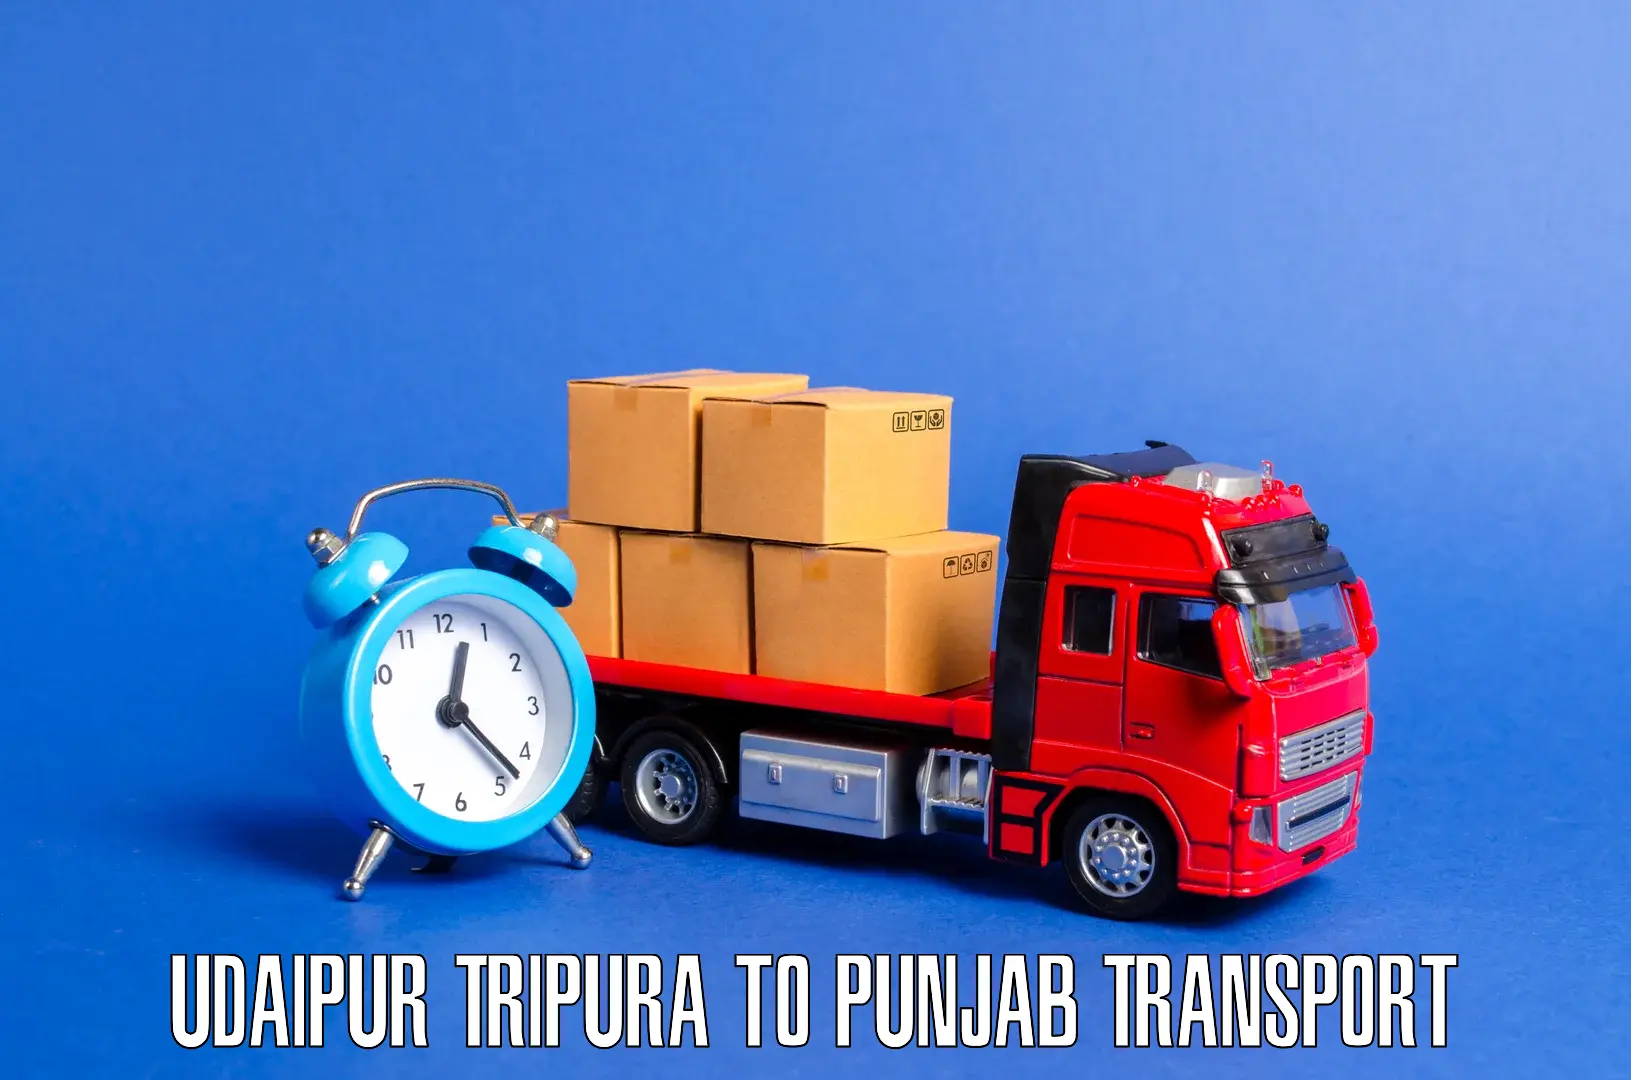 Transportation services Udaipur Tripura to Tarn Taran Sahib